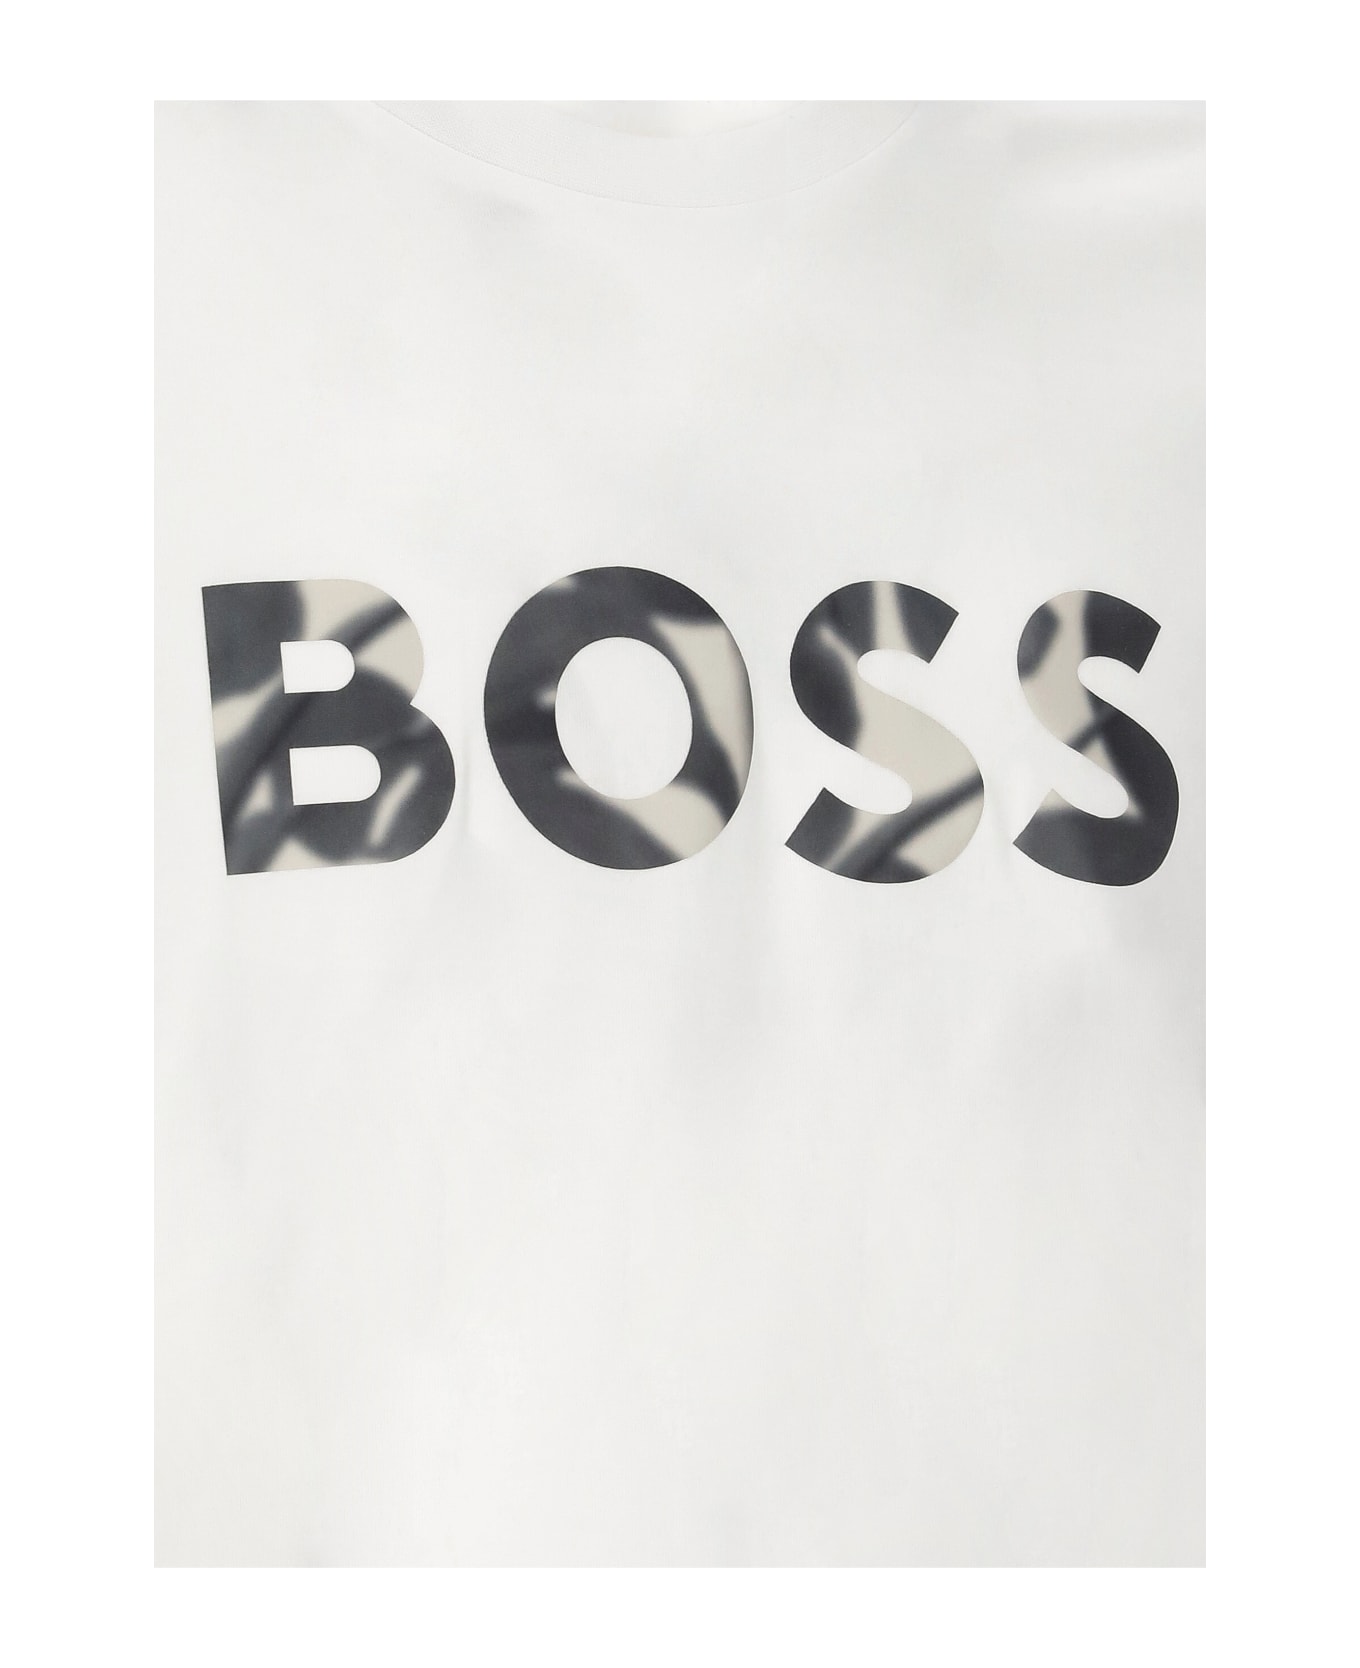 Hugo Boss Thompson 15 T-shirt - White